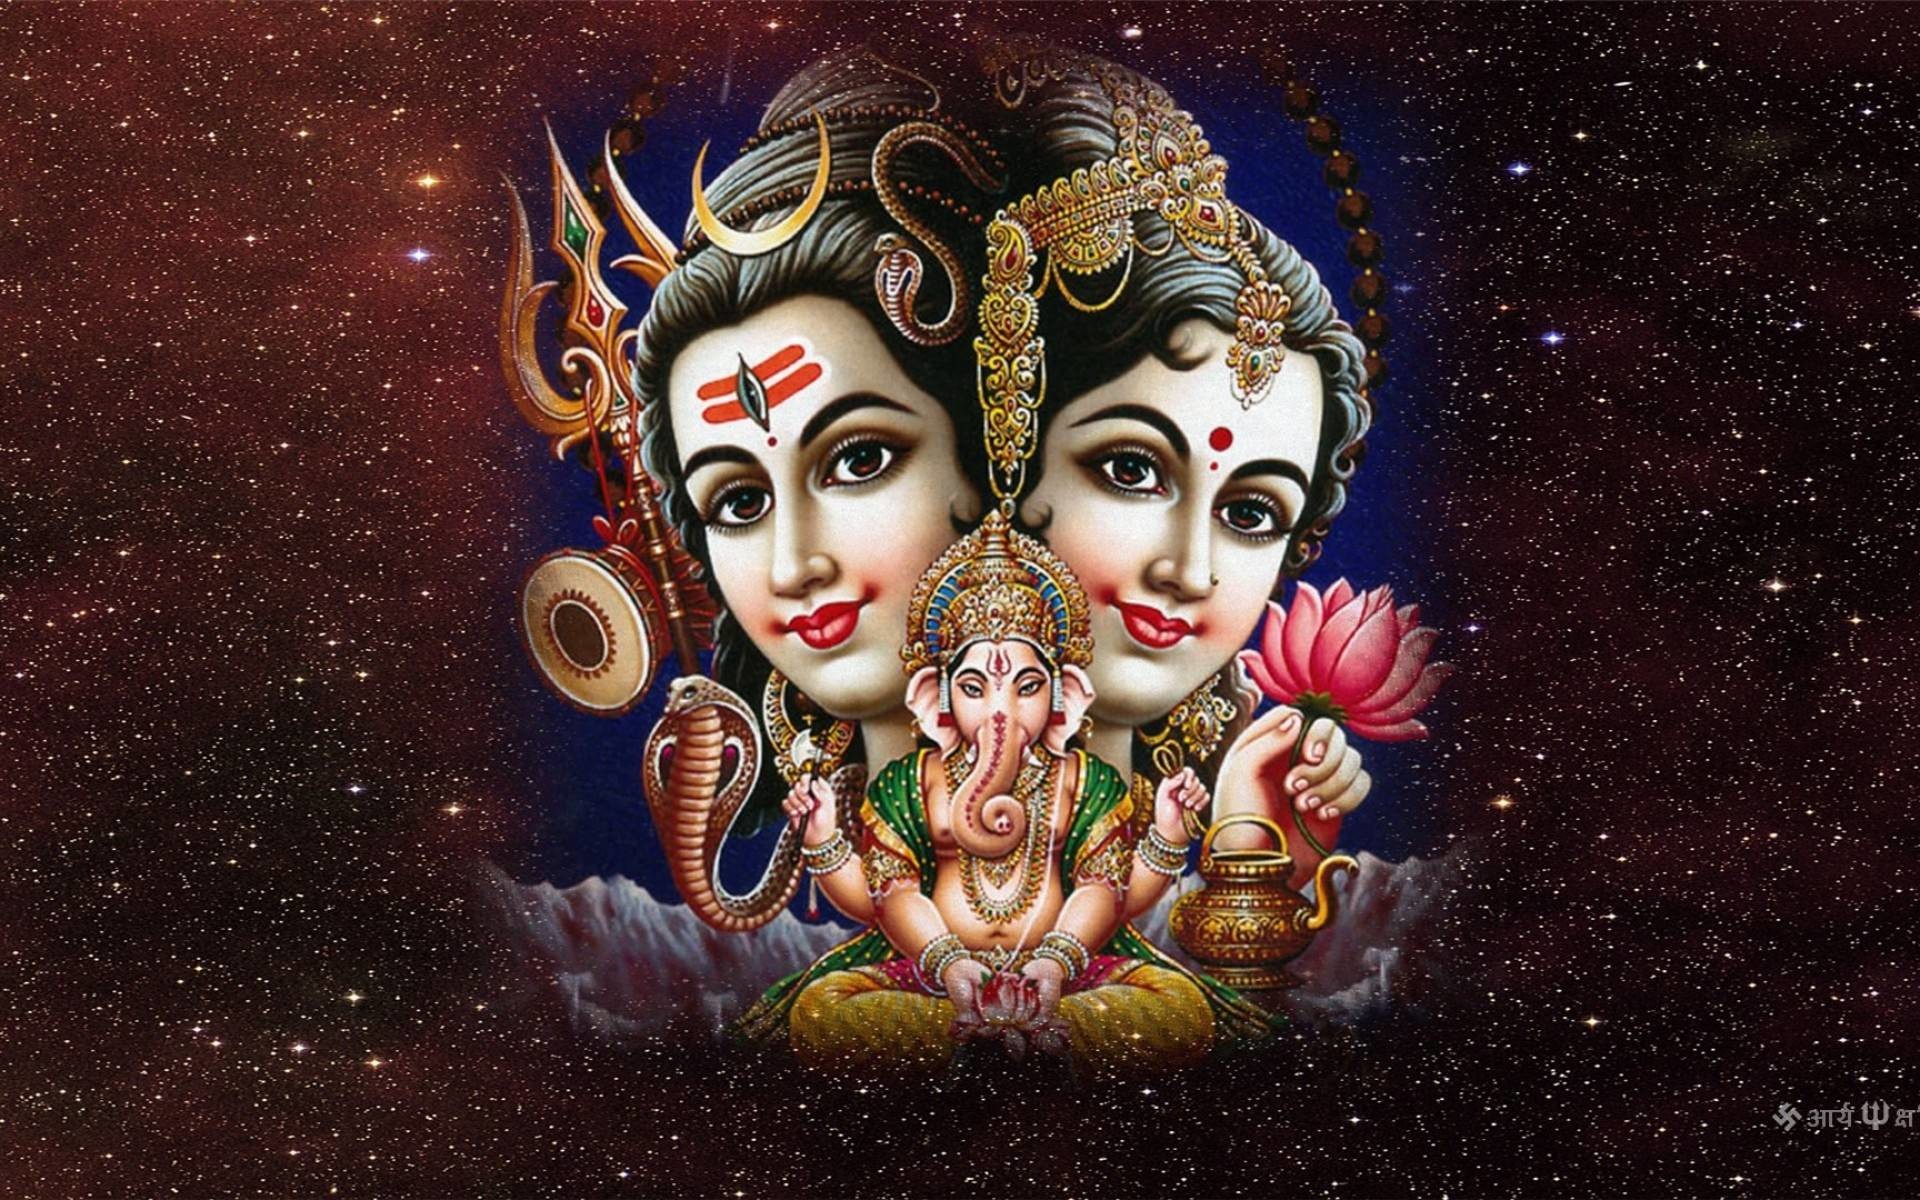 Hindu God Hanumaan 1920x1080 Pixels Full Hd Wallpapers - Hd Wallpaper 1080p God , HD Wallpaper & Backgrounds